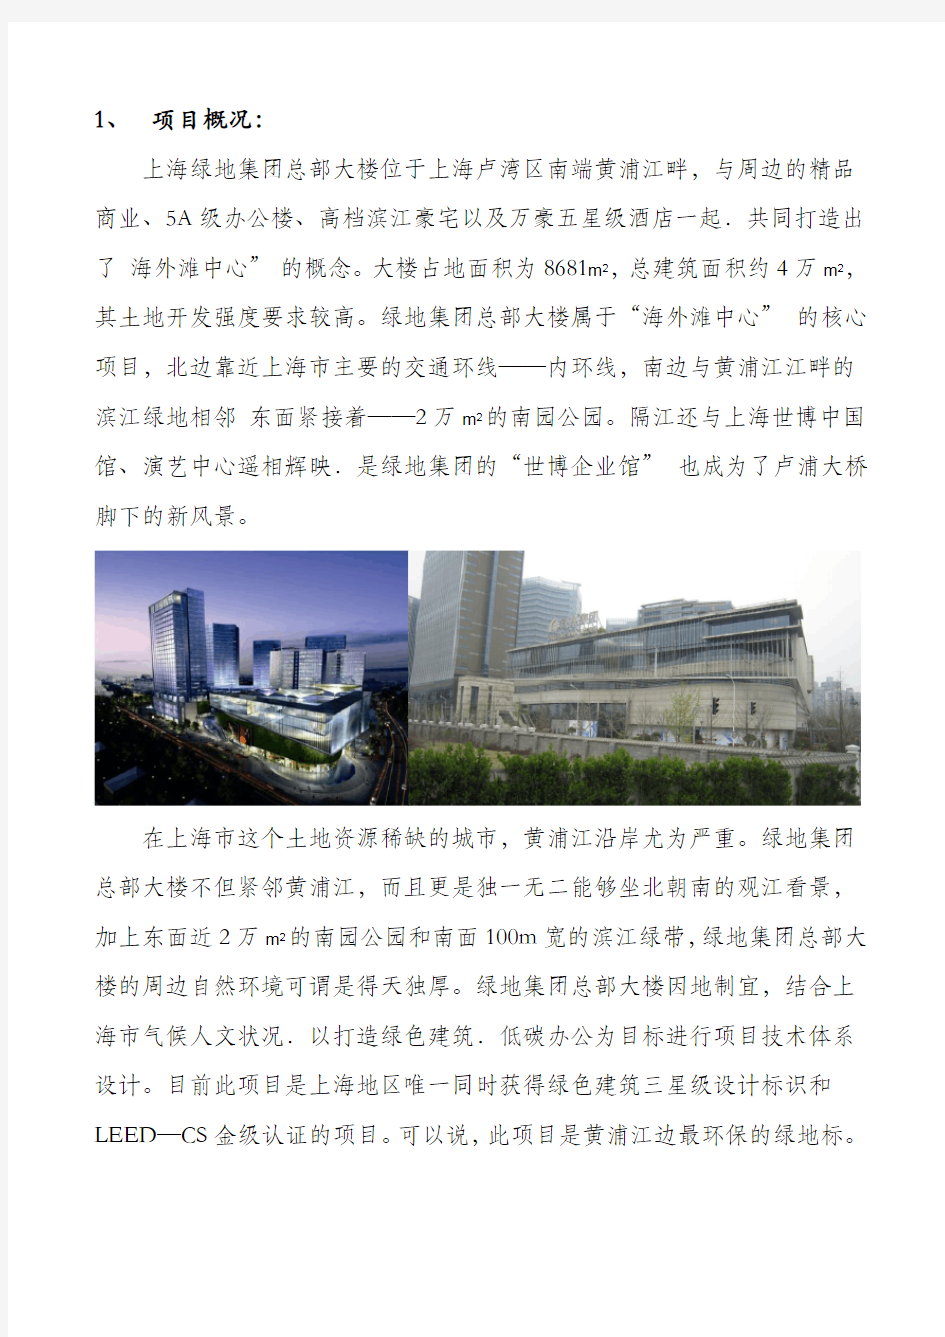 上海绿地集团总部大楼调研